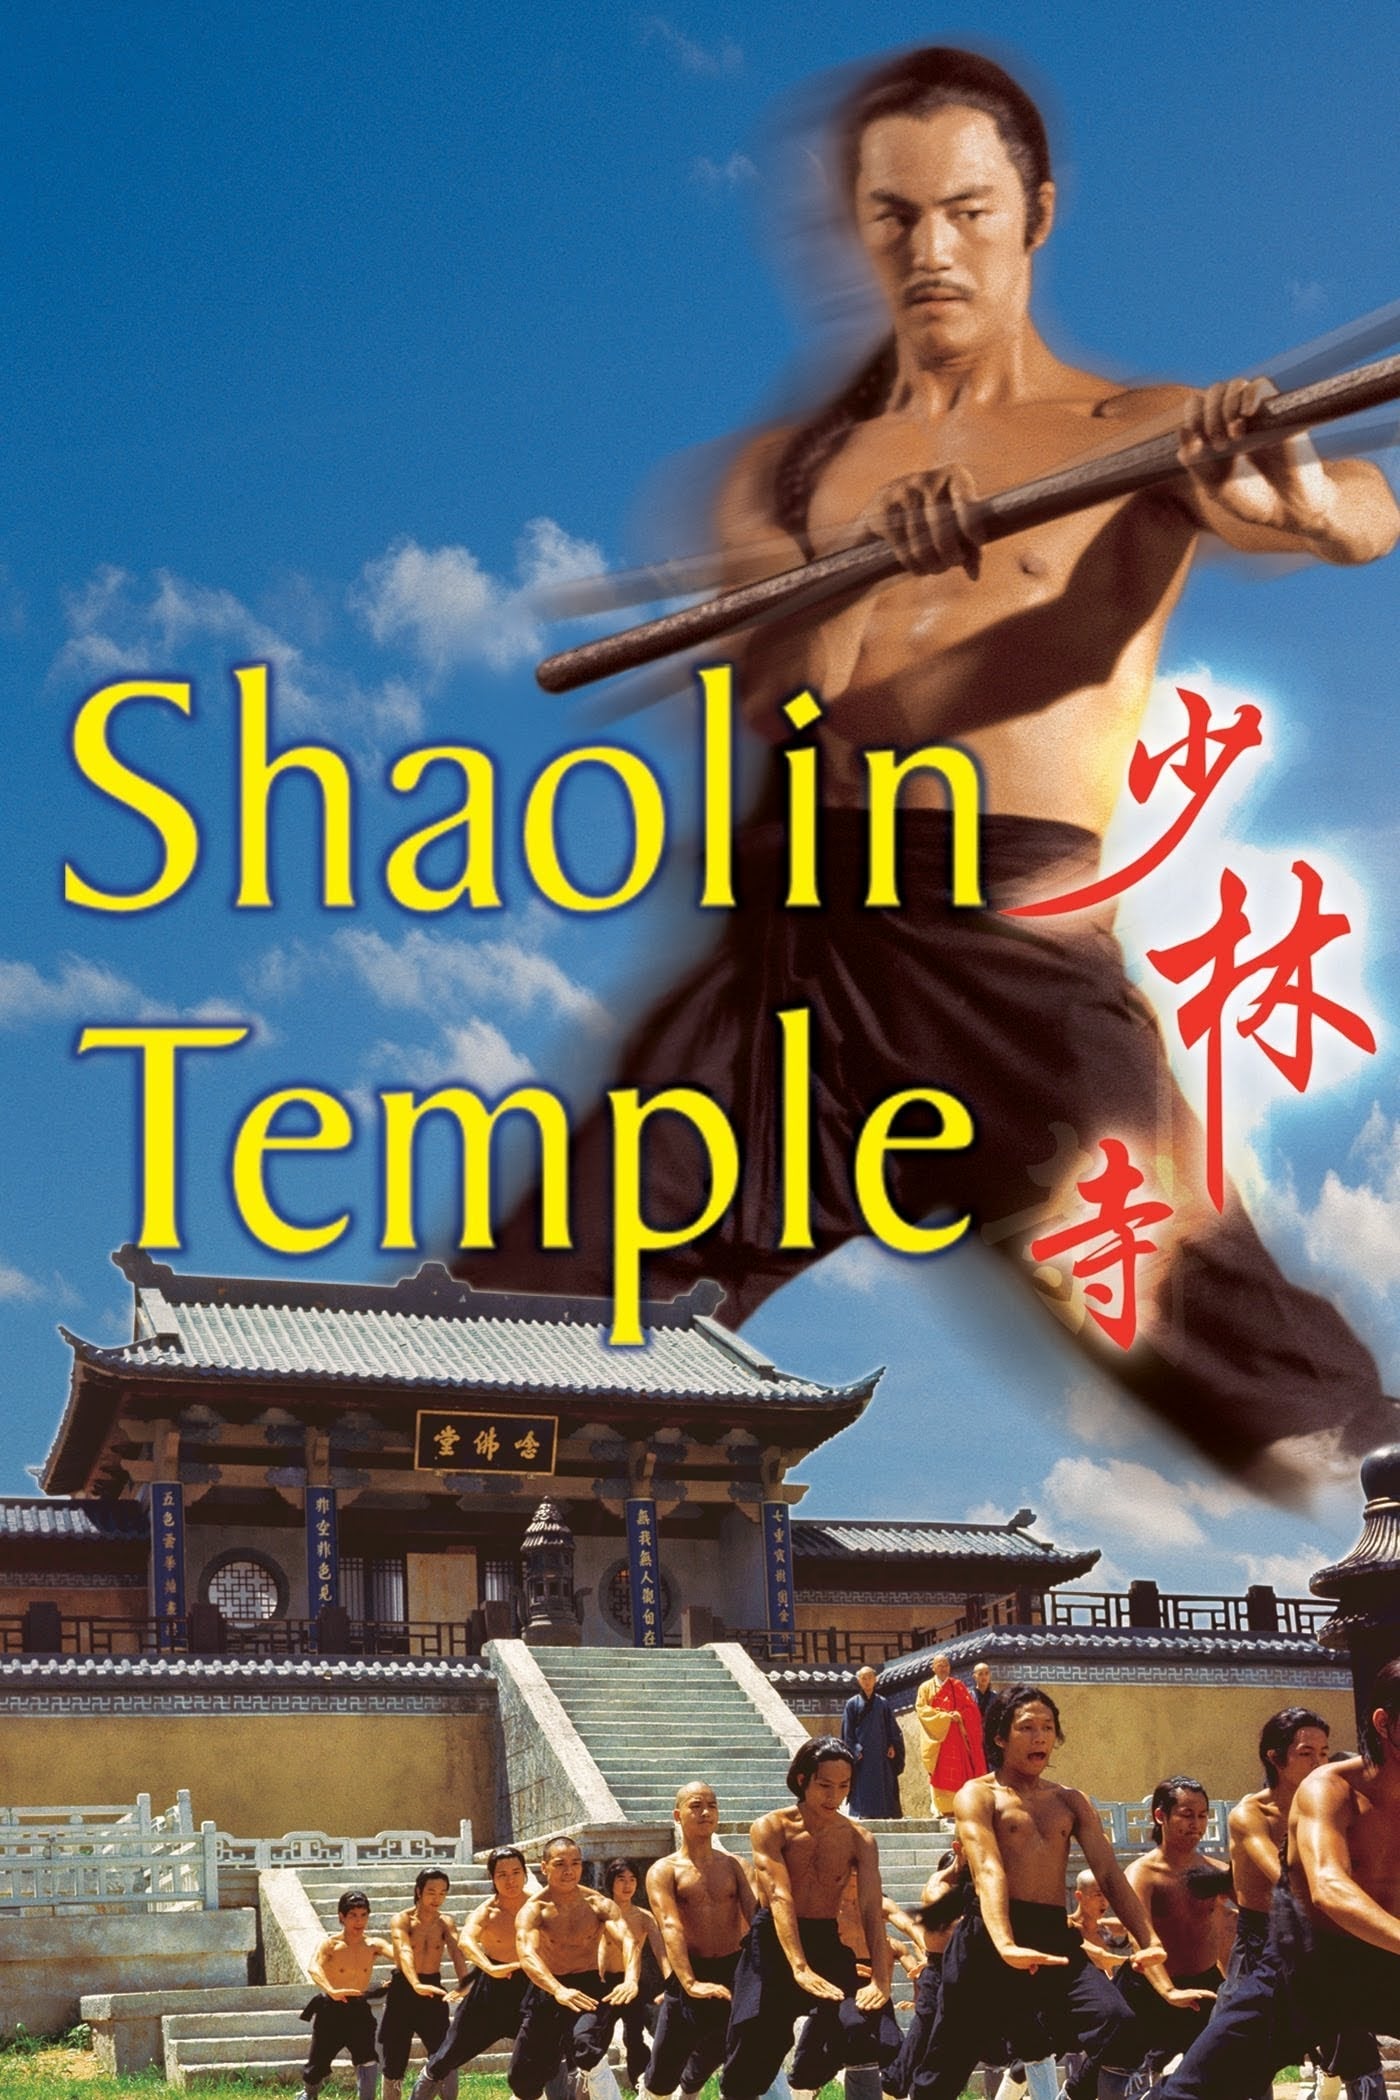 O Templo de Shaolin